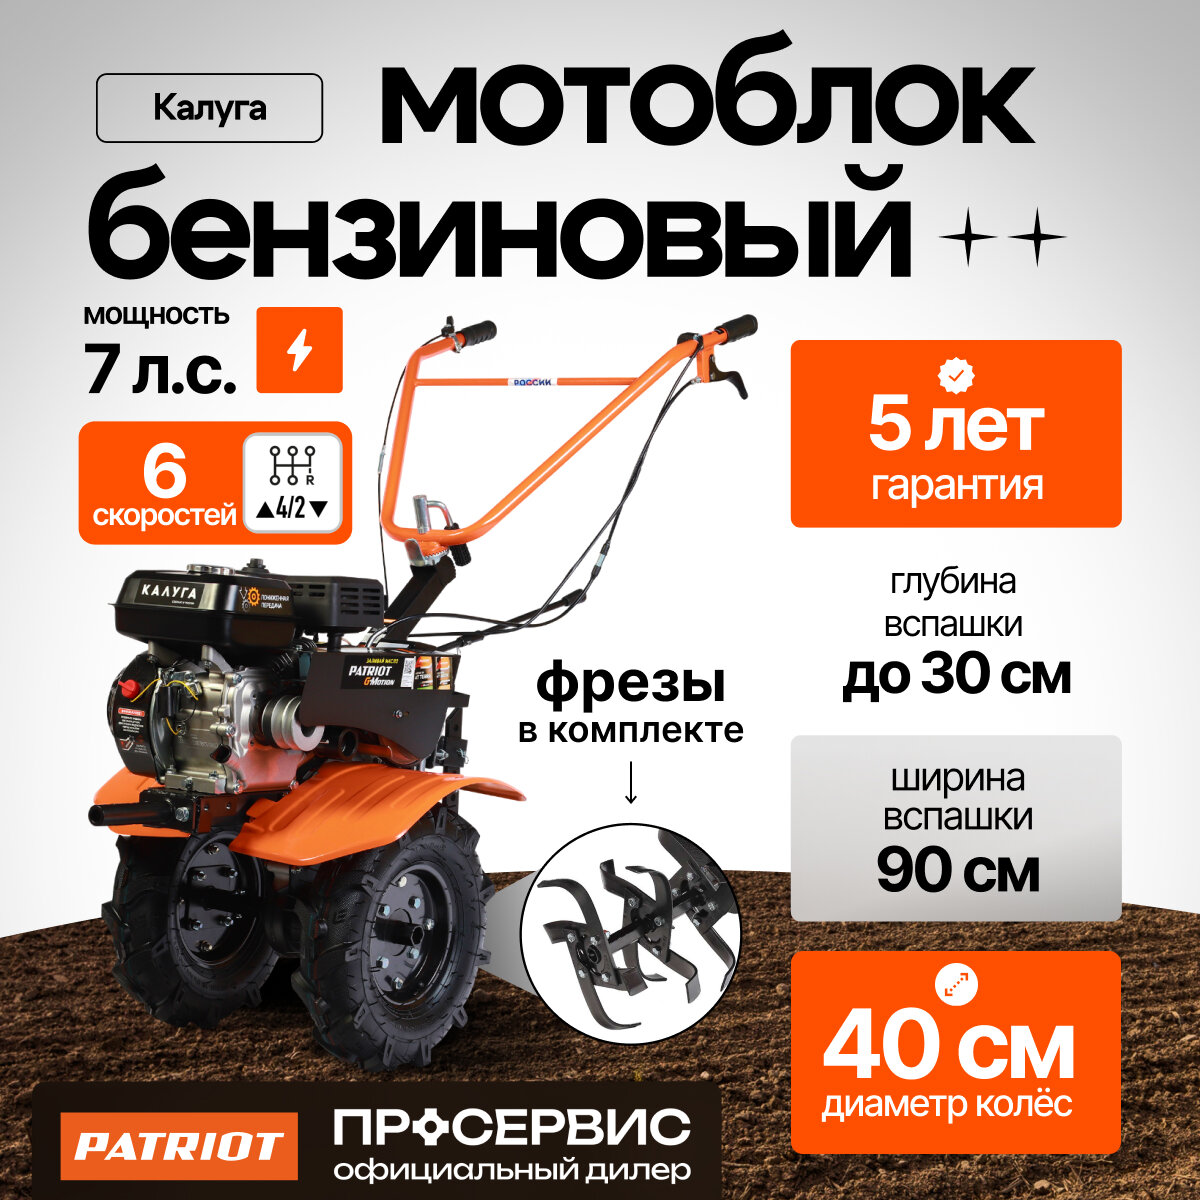 Мотоблок бензиновый PATRIOT Калуга (440107010), 7 л. с.